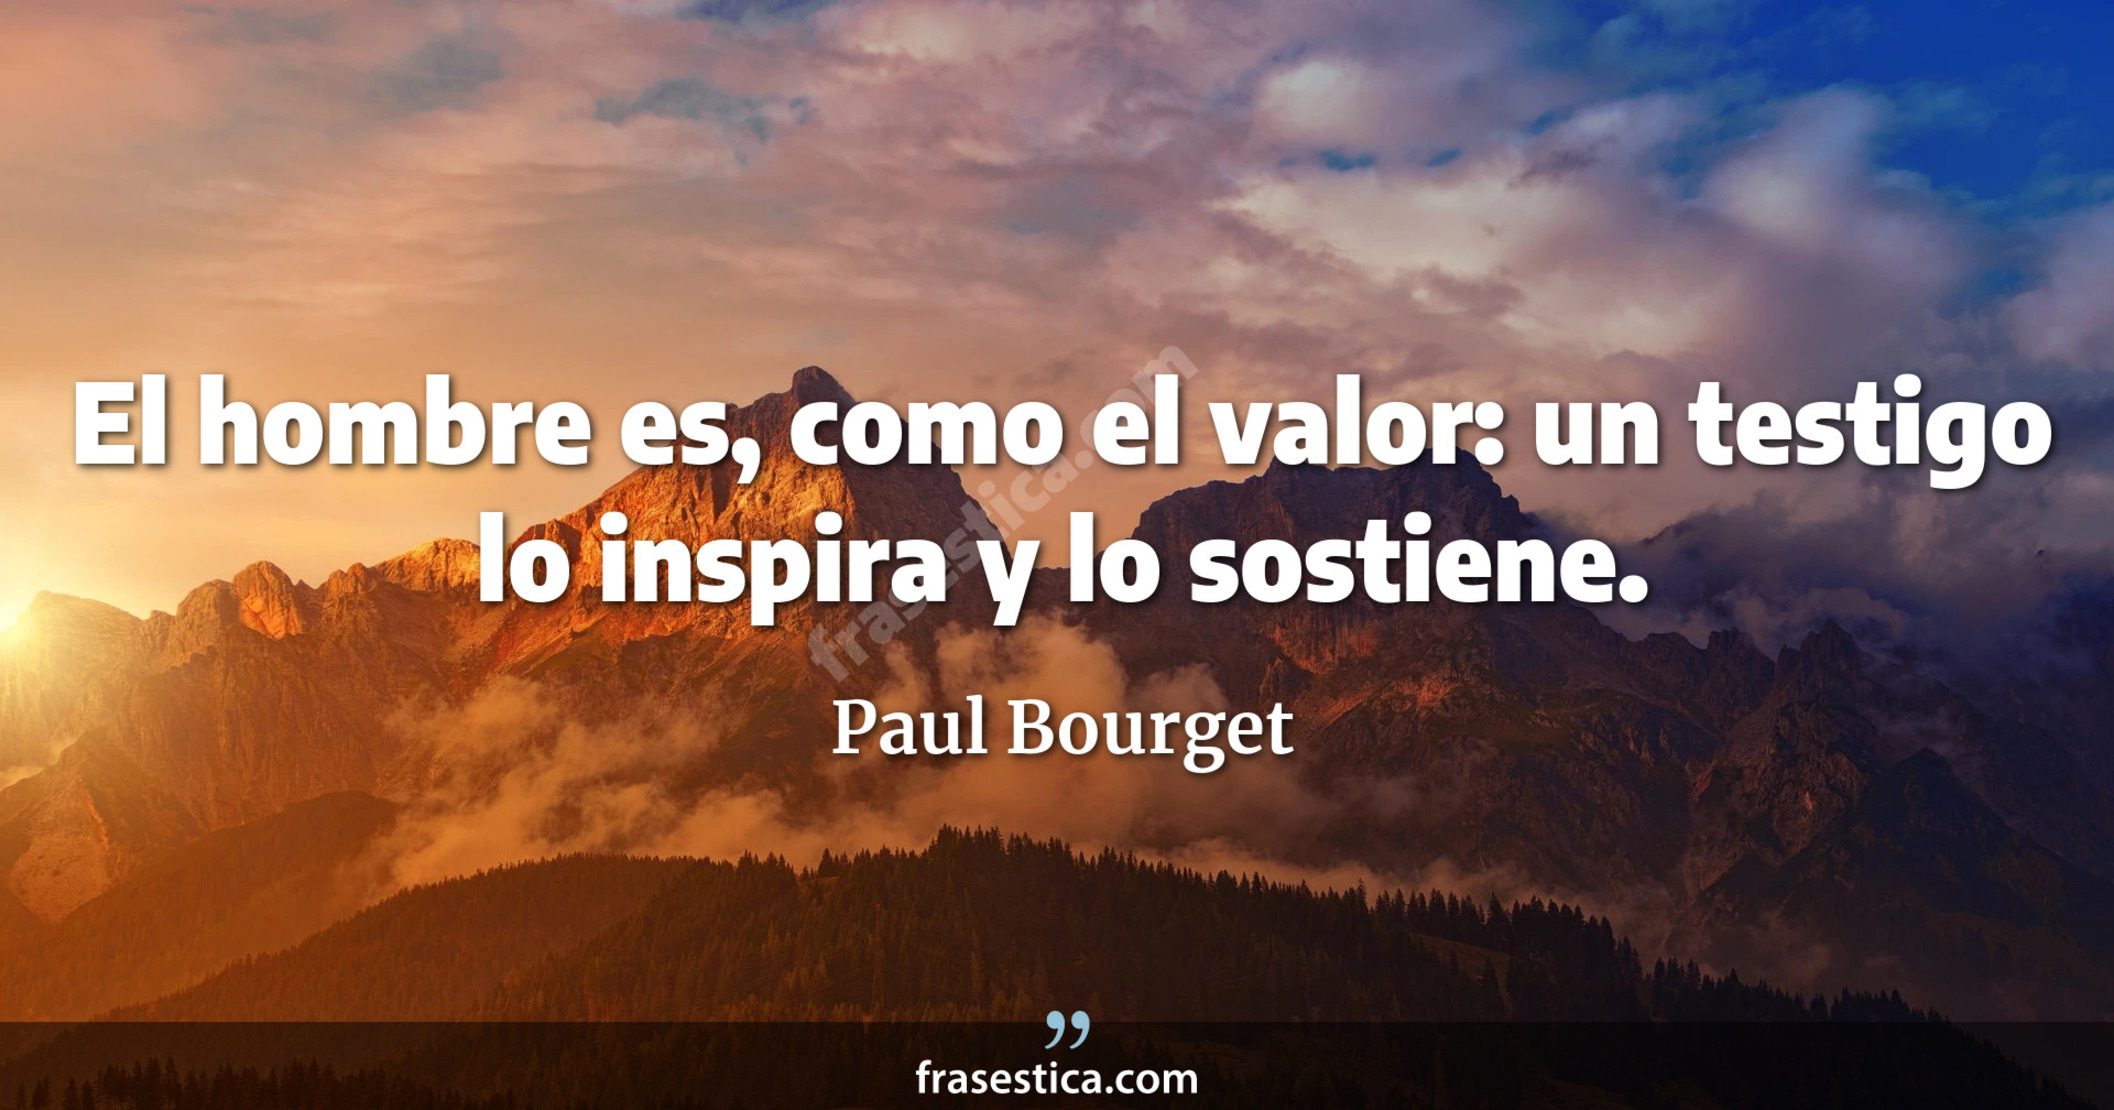 El hombre es, como el valor: un testigo lo inspira y lo sostiene. - Paul Bourget